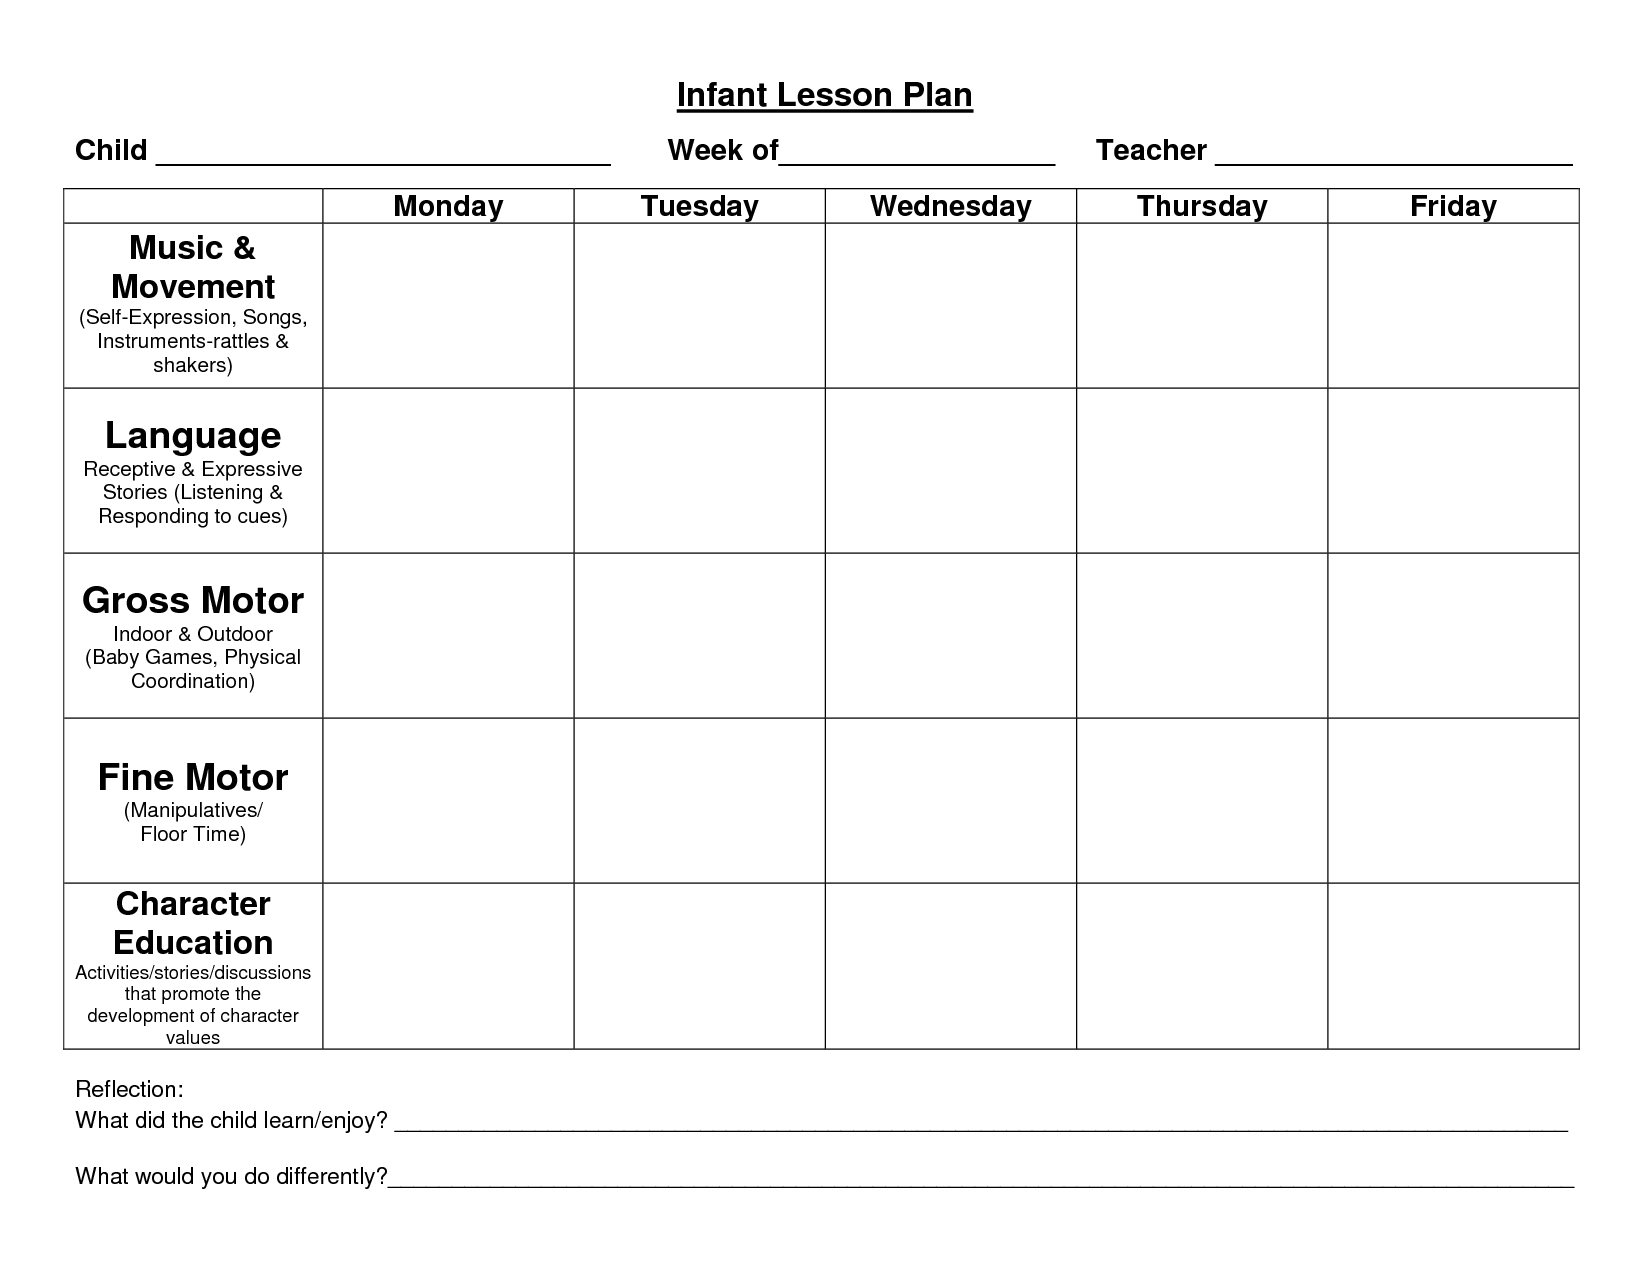 Weekly Lesson Plan Calendar Template | Calendar Template ...